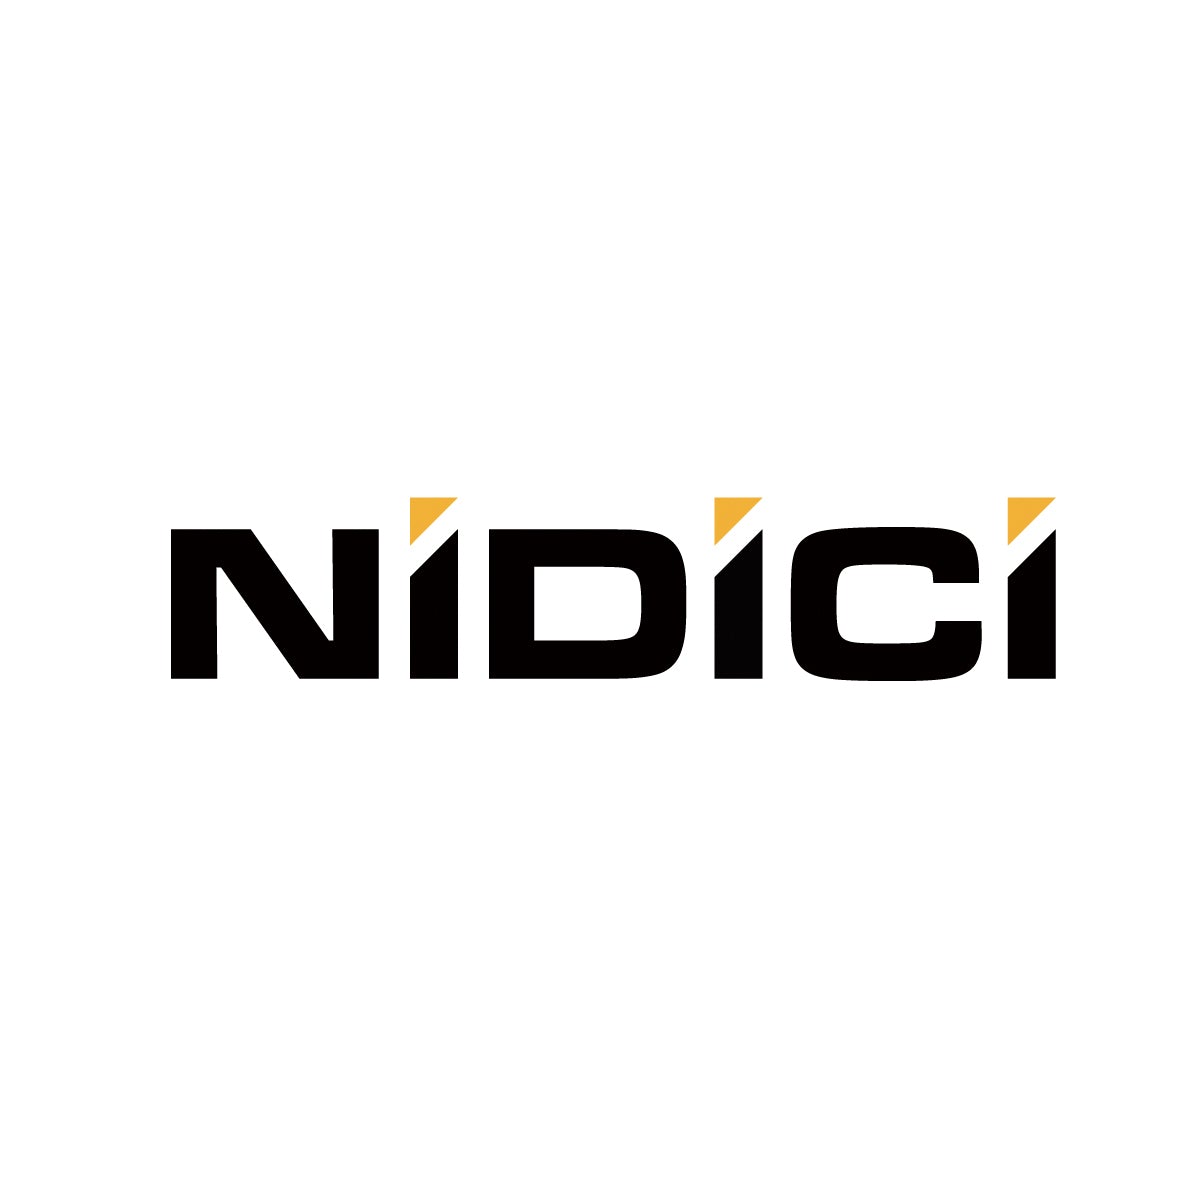 NIDICI | Drone Authority